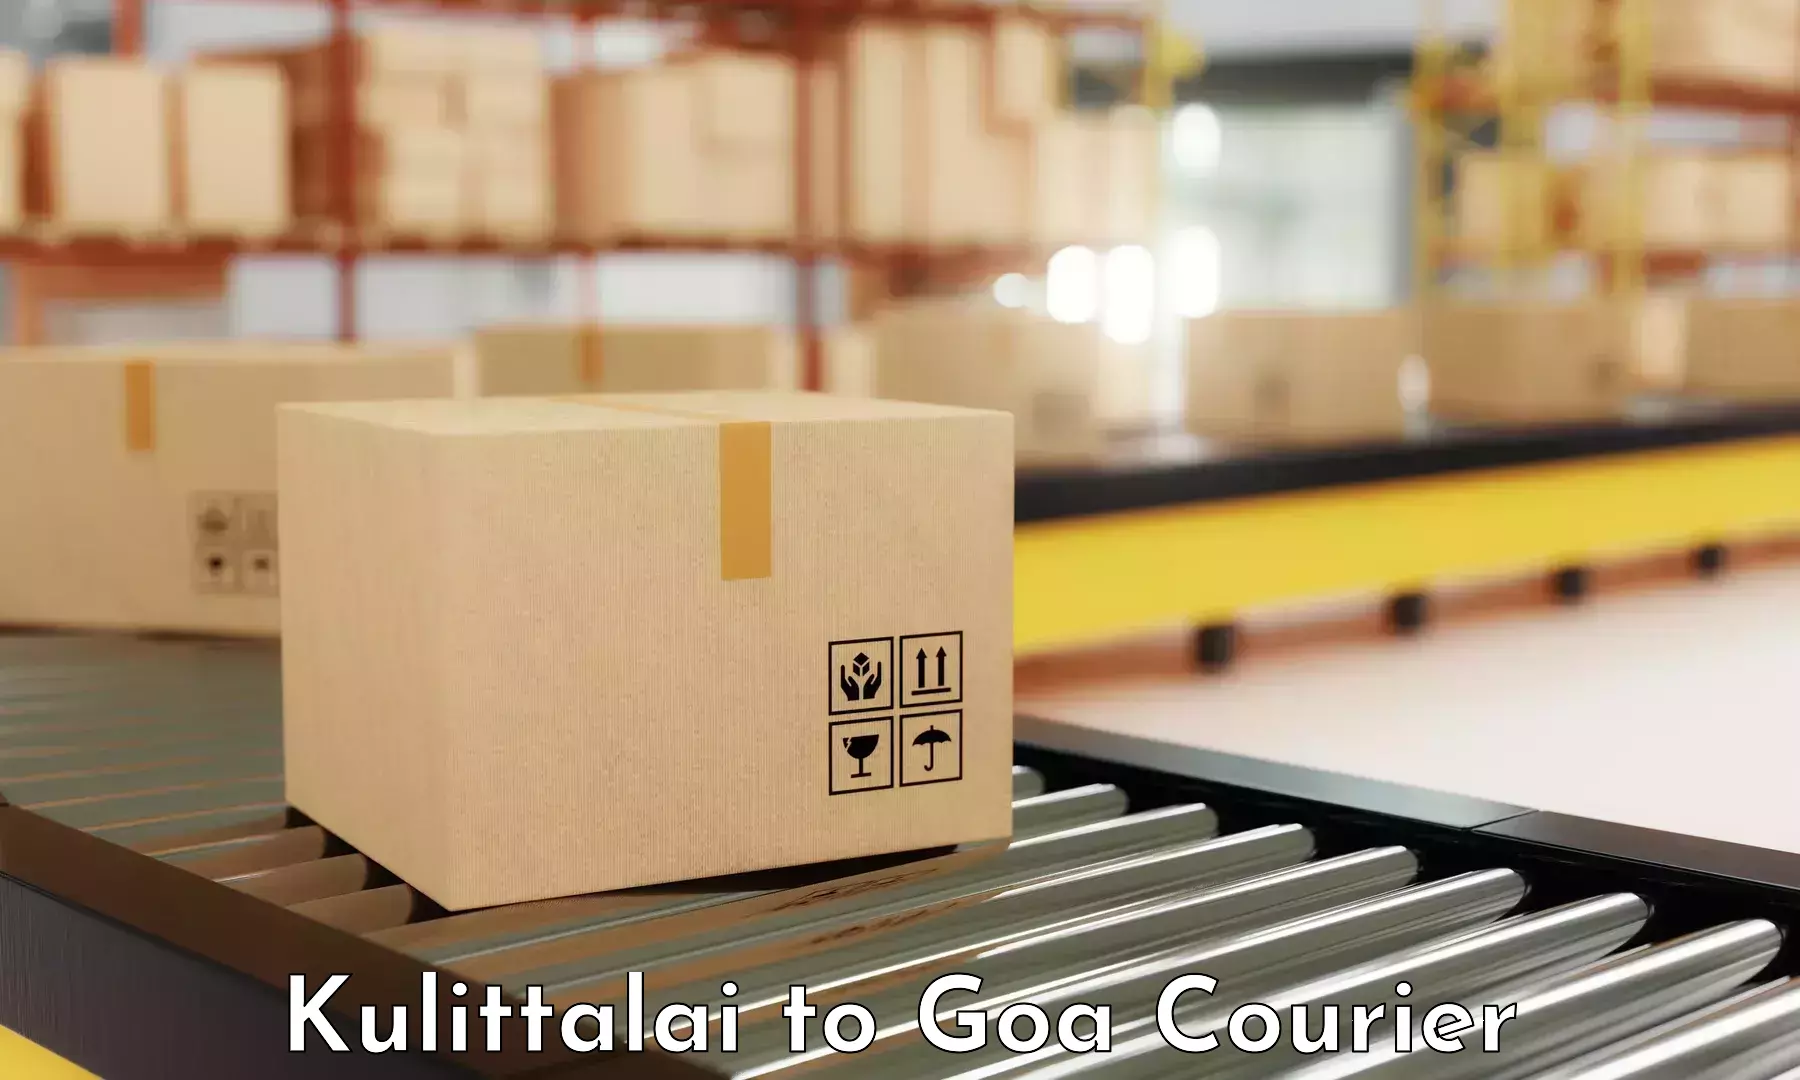 Lightweight parcel options Kulittalai to IIT Goa